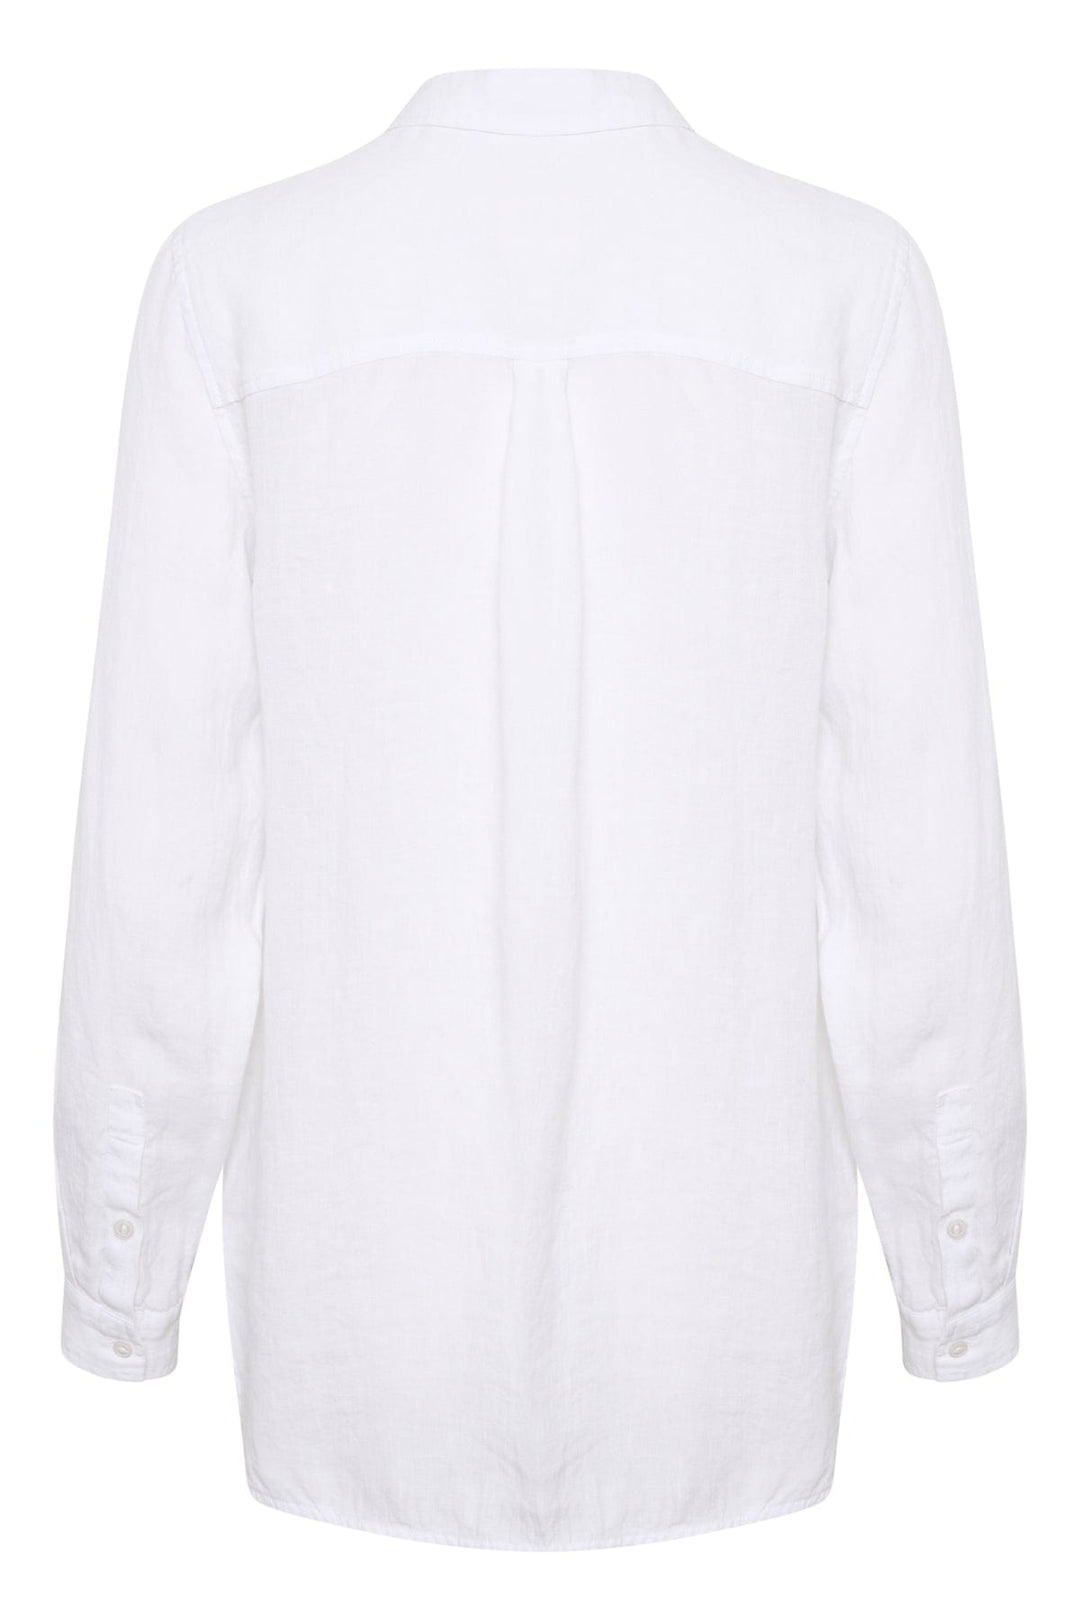 Kivaspw Shirt BRIGHT WHITE | Skjorter og bluser | Smuk - Dameklær på nett